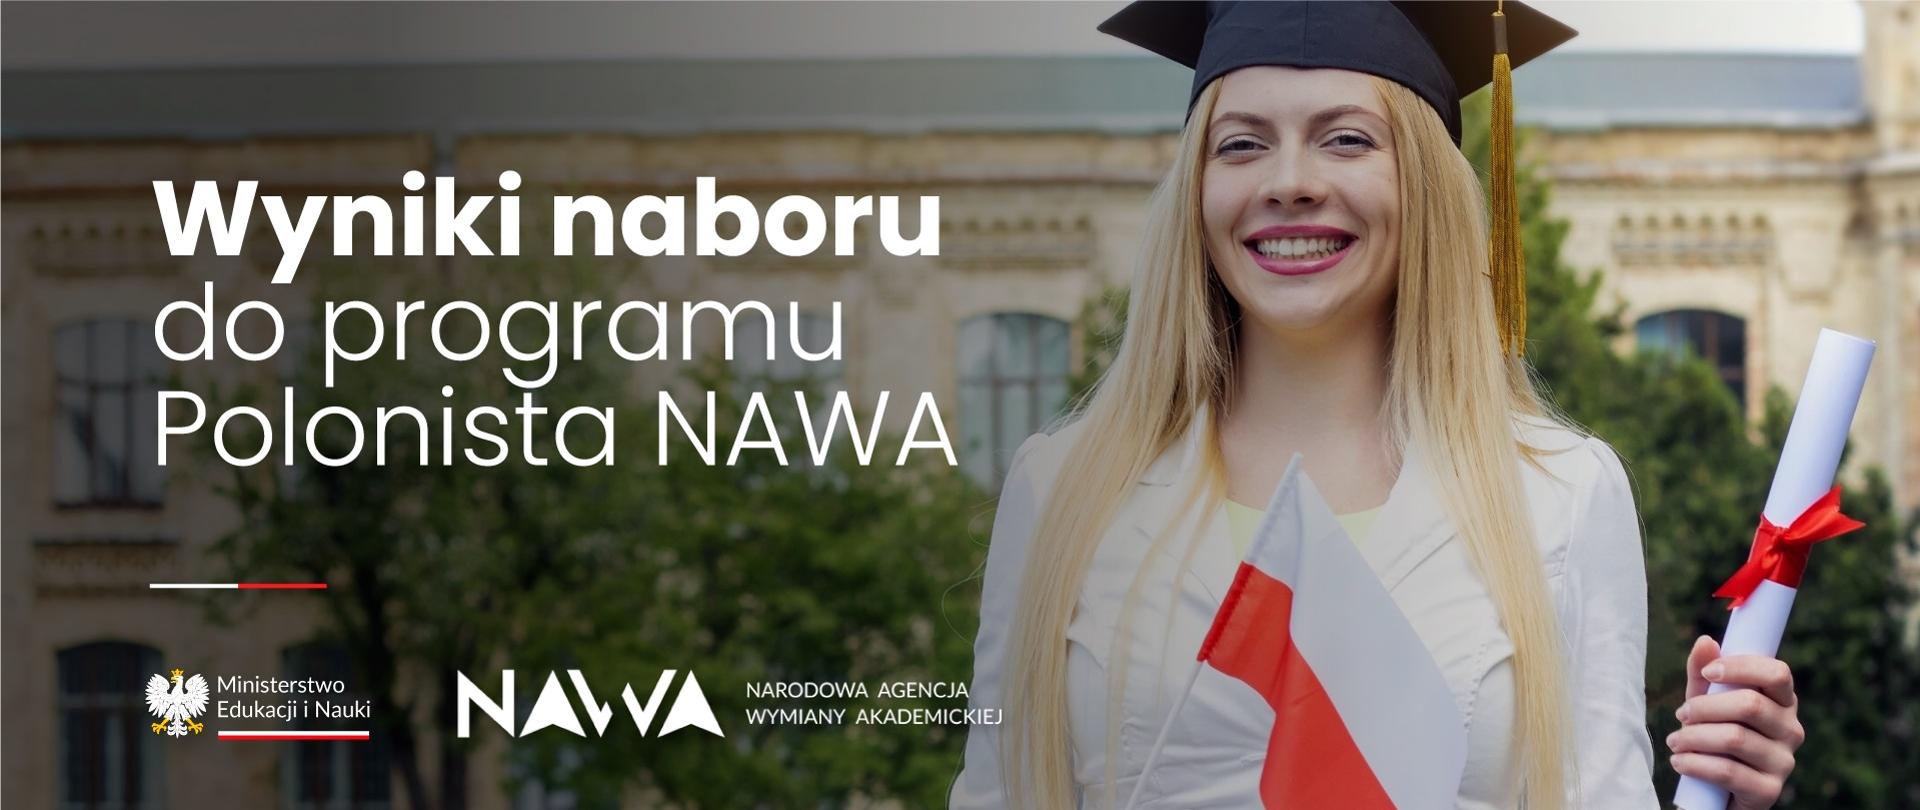 Grafika - uśmiechnięta kobieta z dyplomem w ręku, obok napis Wyniki naboru do programu Polonista NAWA.